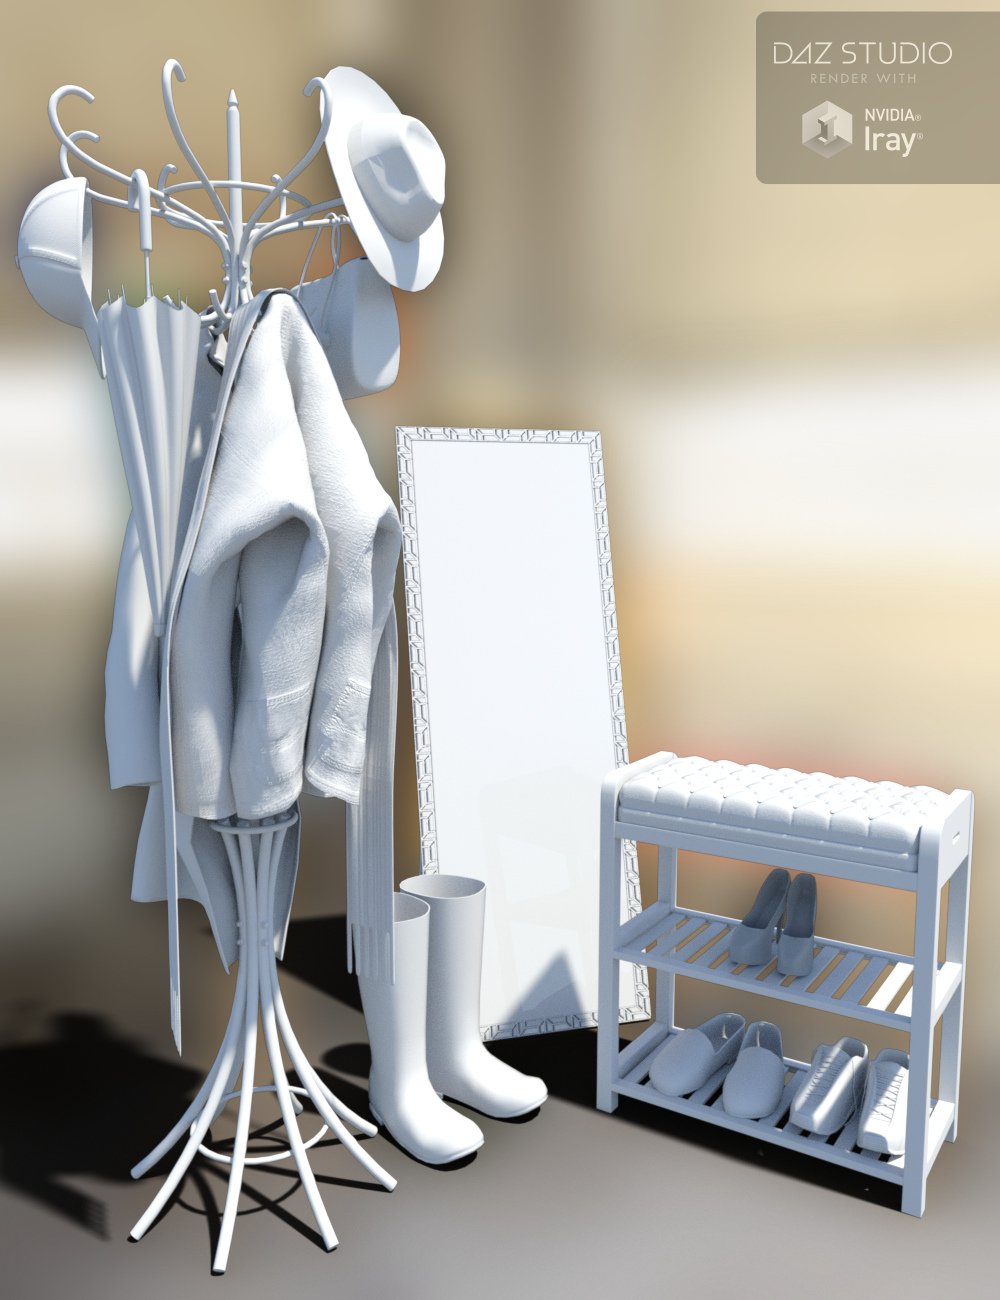 Cloakroom Clutter by: Merlin Studios, 3D Models by Daz 3D